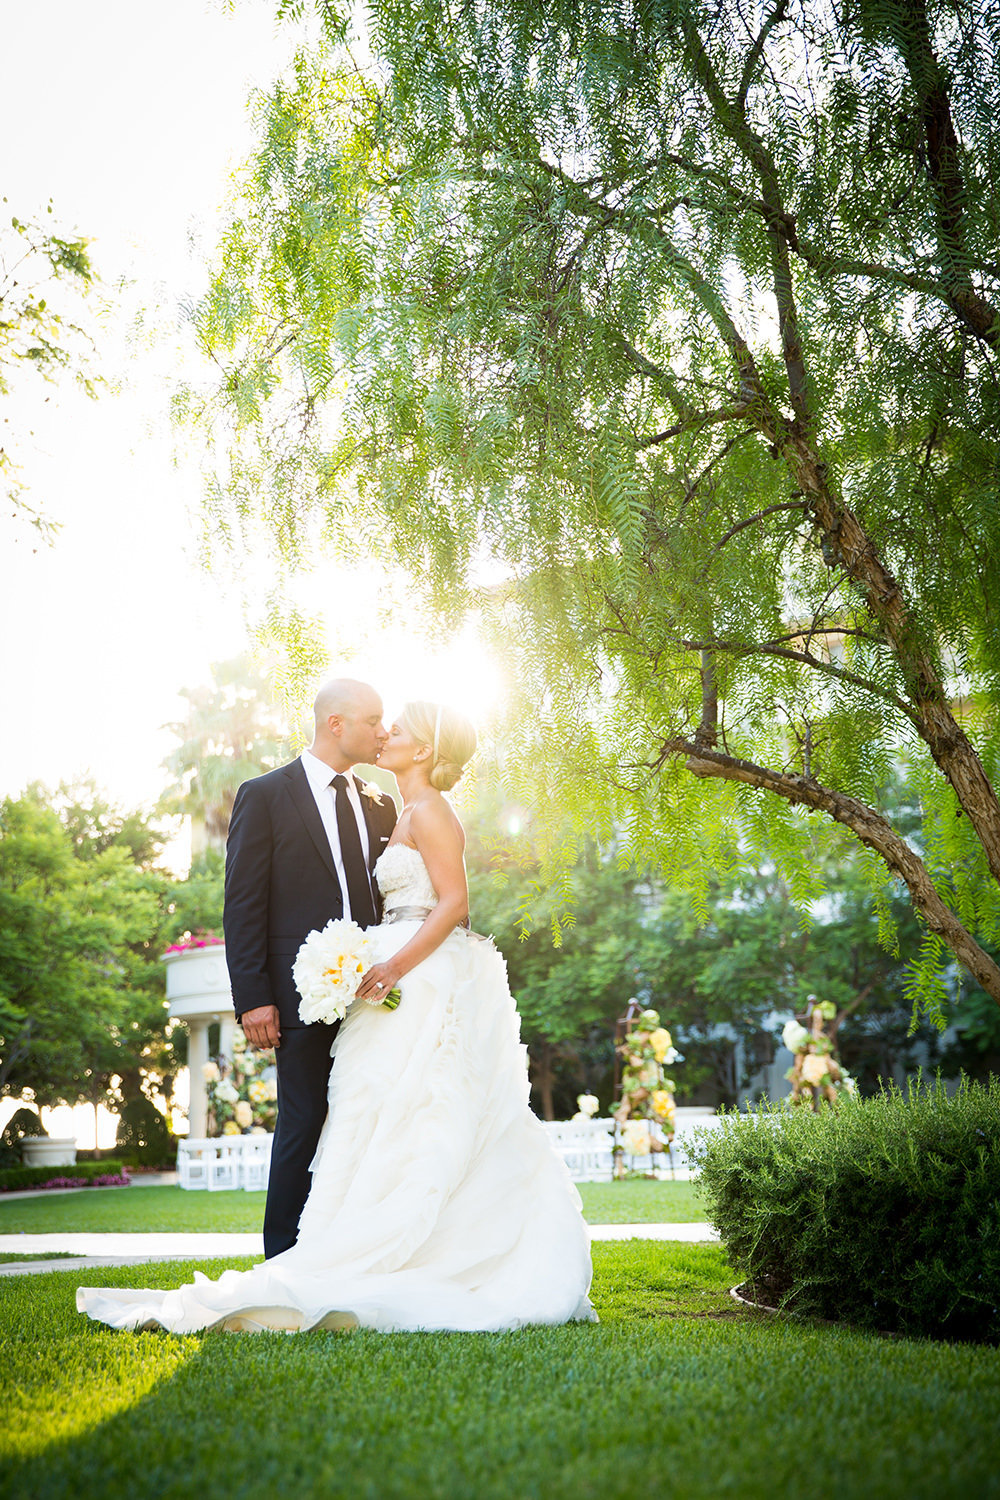 The sun shines through as our bride an groom sneak a kiss